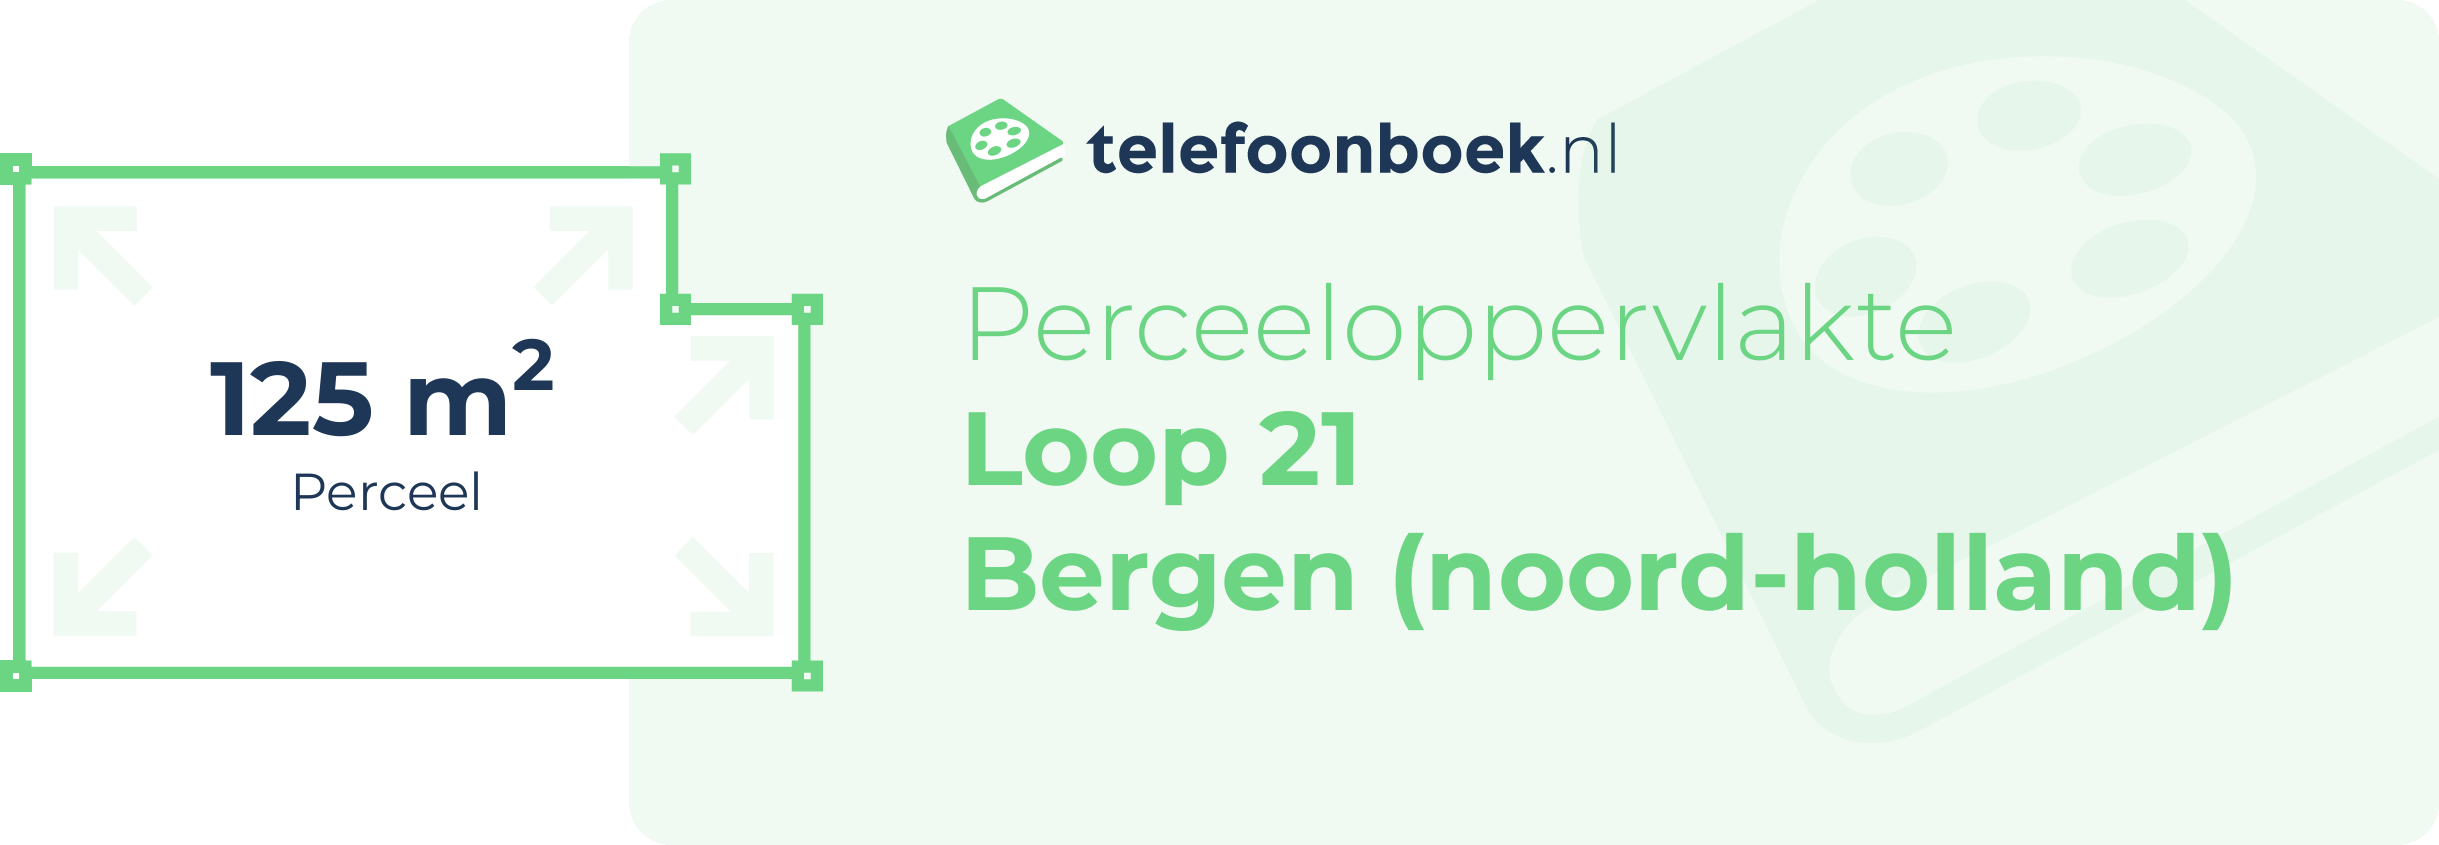 Perceeloppervlakte Loop 21 Bergen (Noord-Holland)